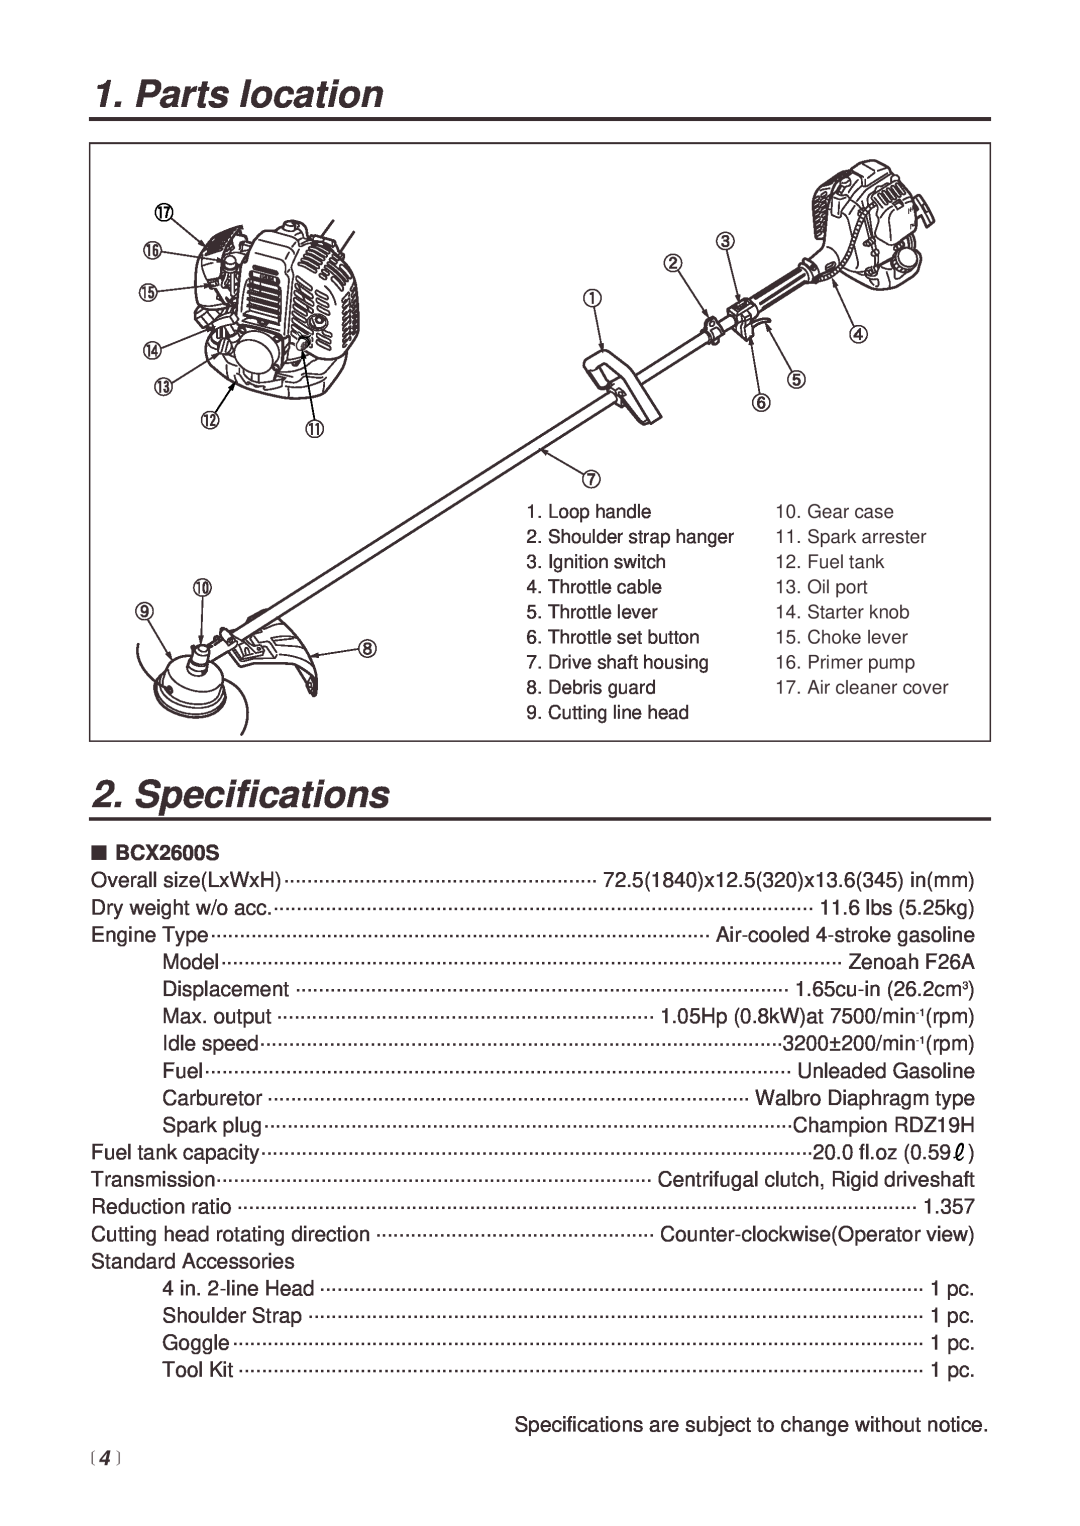 Zenoah BCX2600S manual Parts location, Specifications, 4  